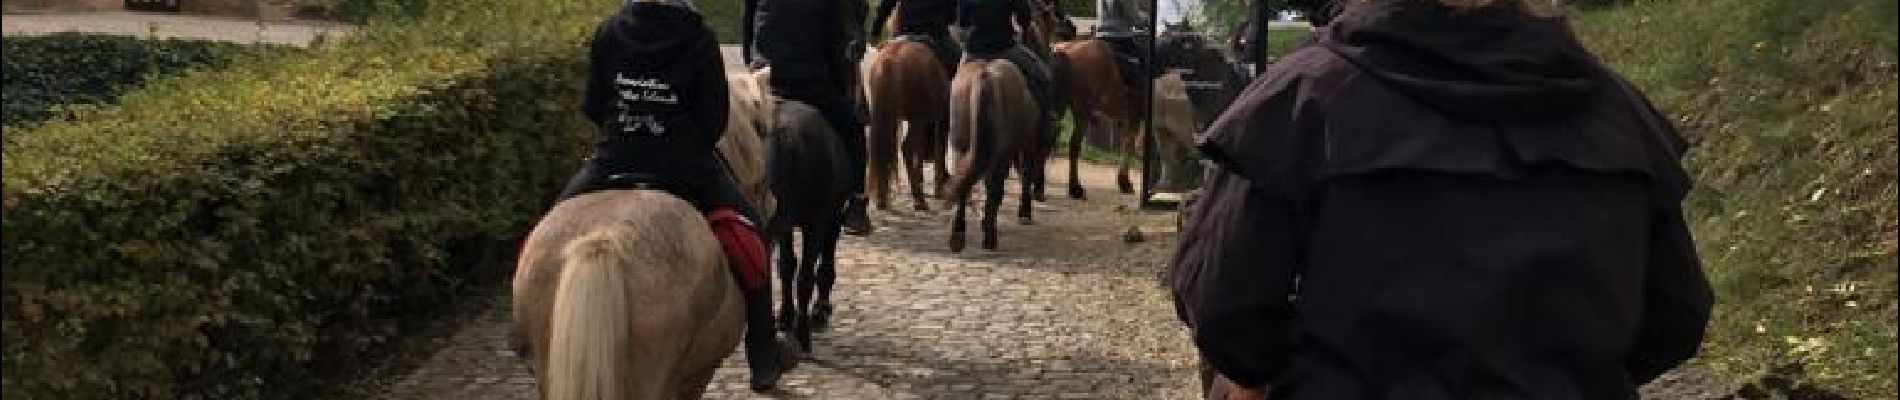 Percorso Equitazione Sierck-les-Bains - Sierck-Manderen-Apach - Photo